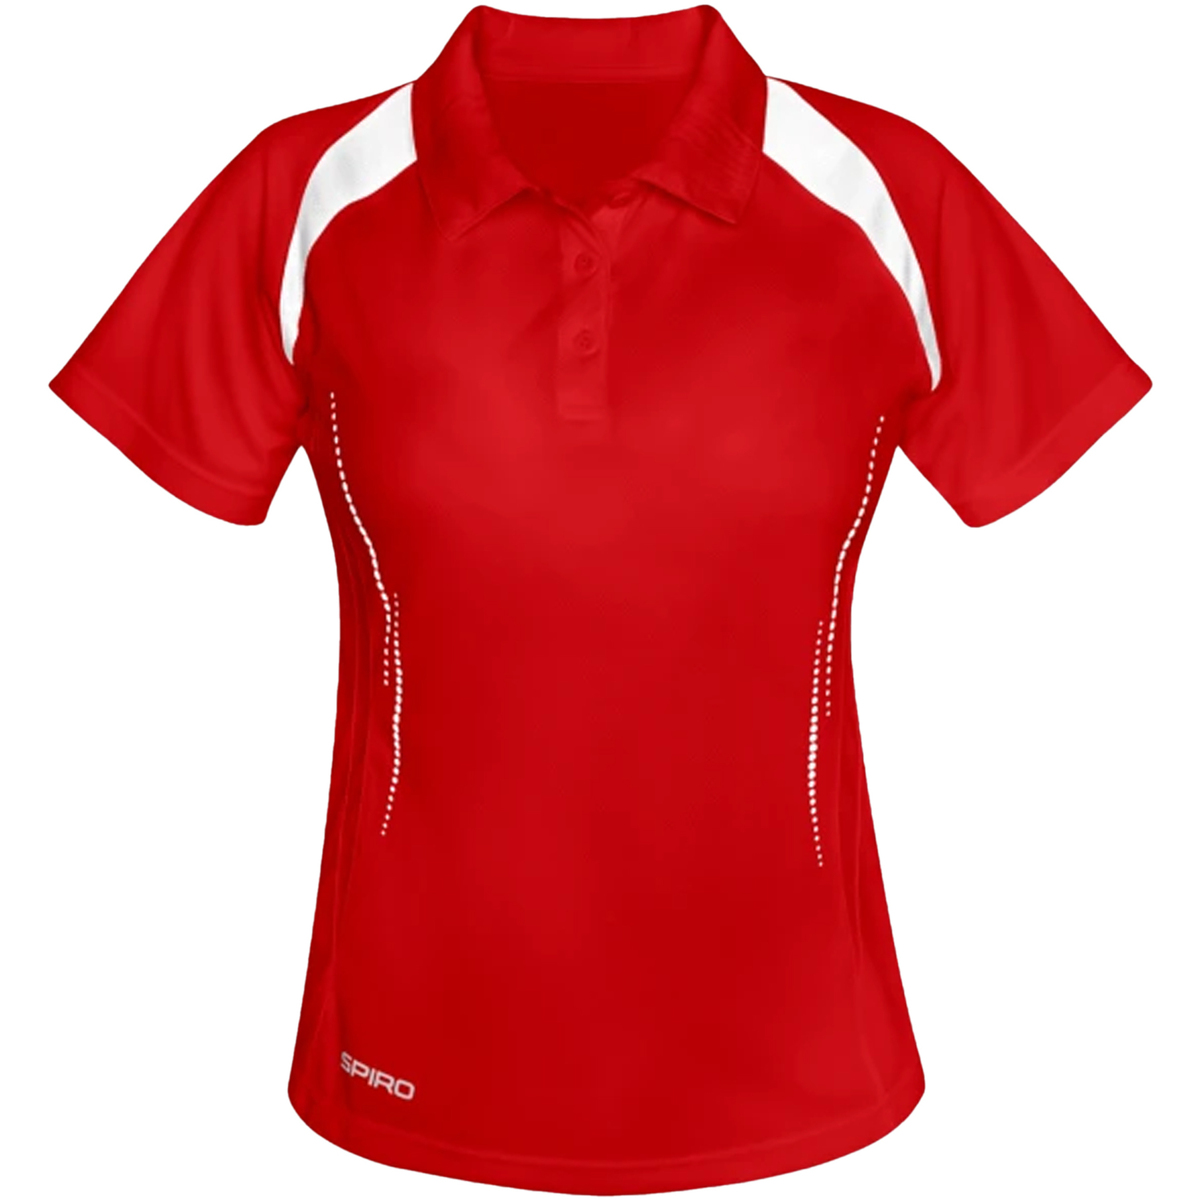 Abbigliamento Donna T-shirt & Polo Spiro S177F Rosso